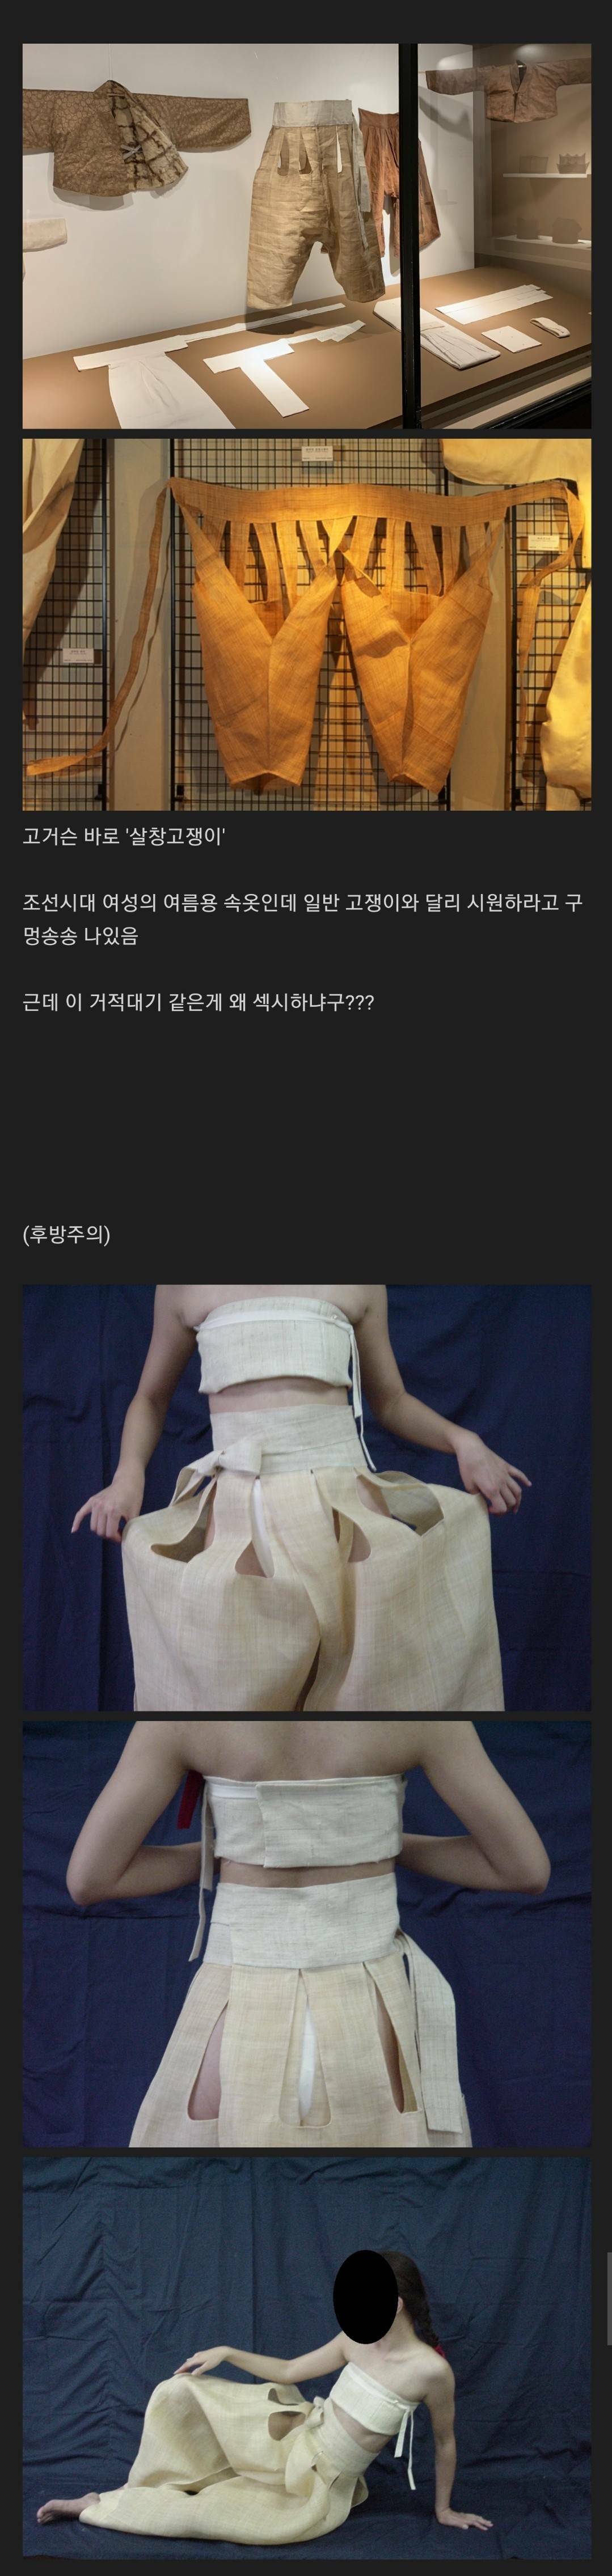 Women's underwear from the Joseon Dynasty...jpg